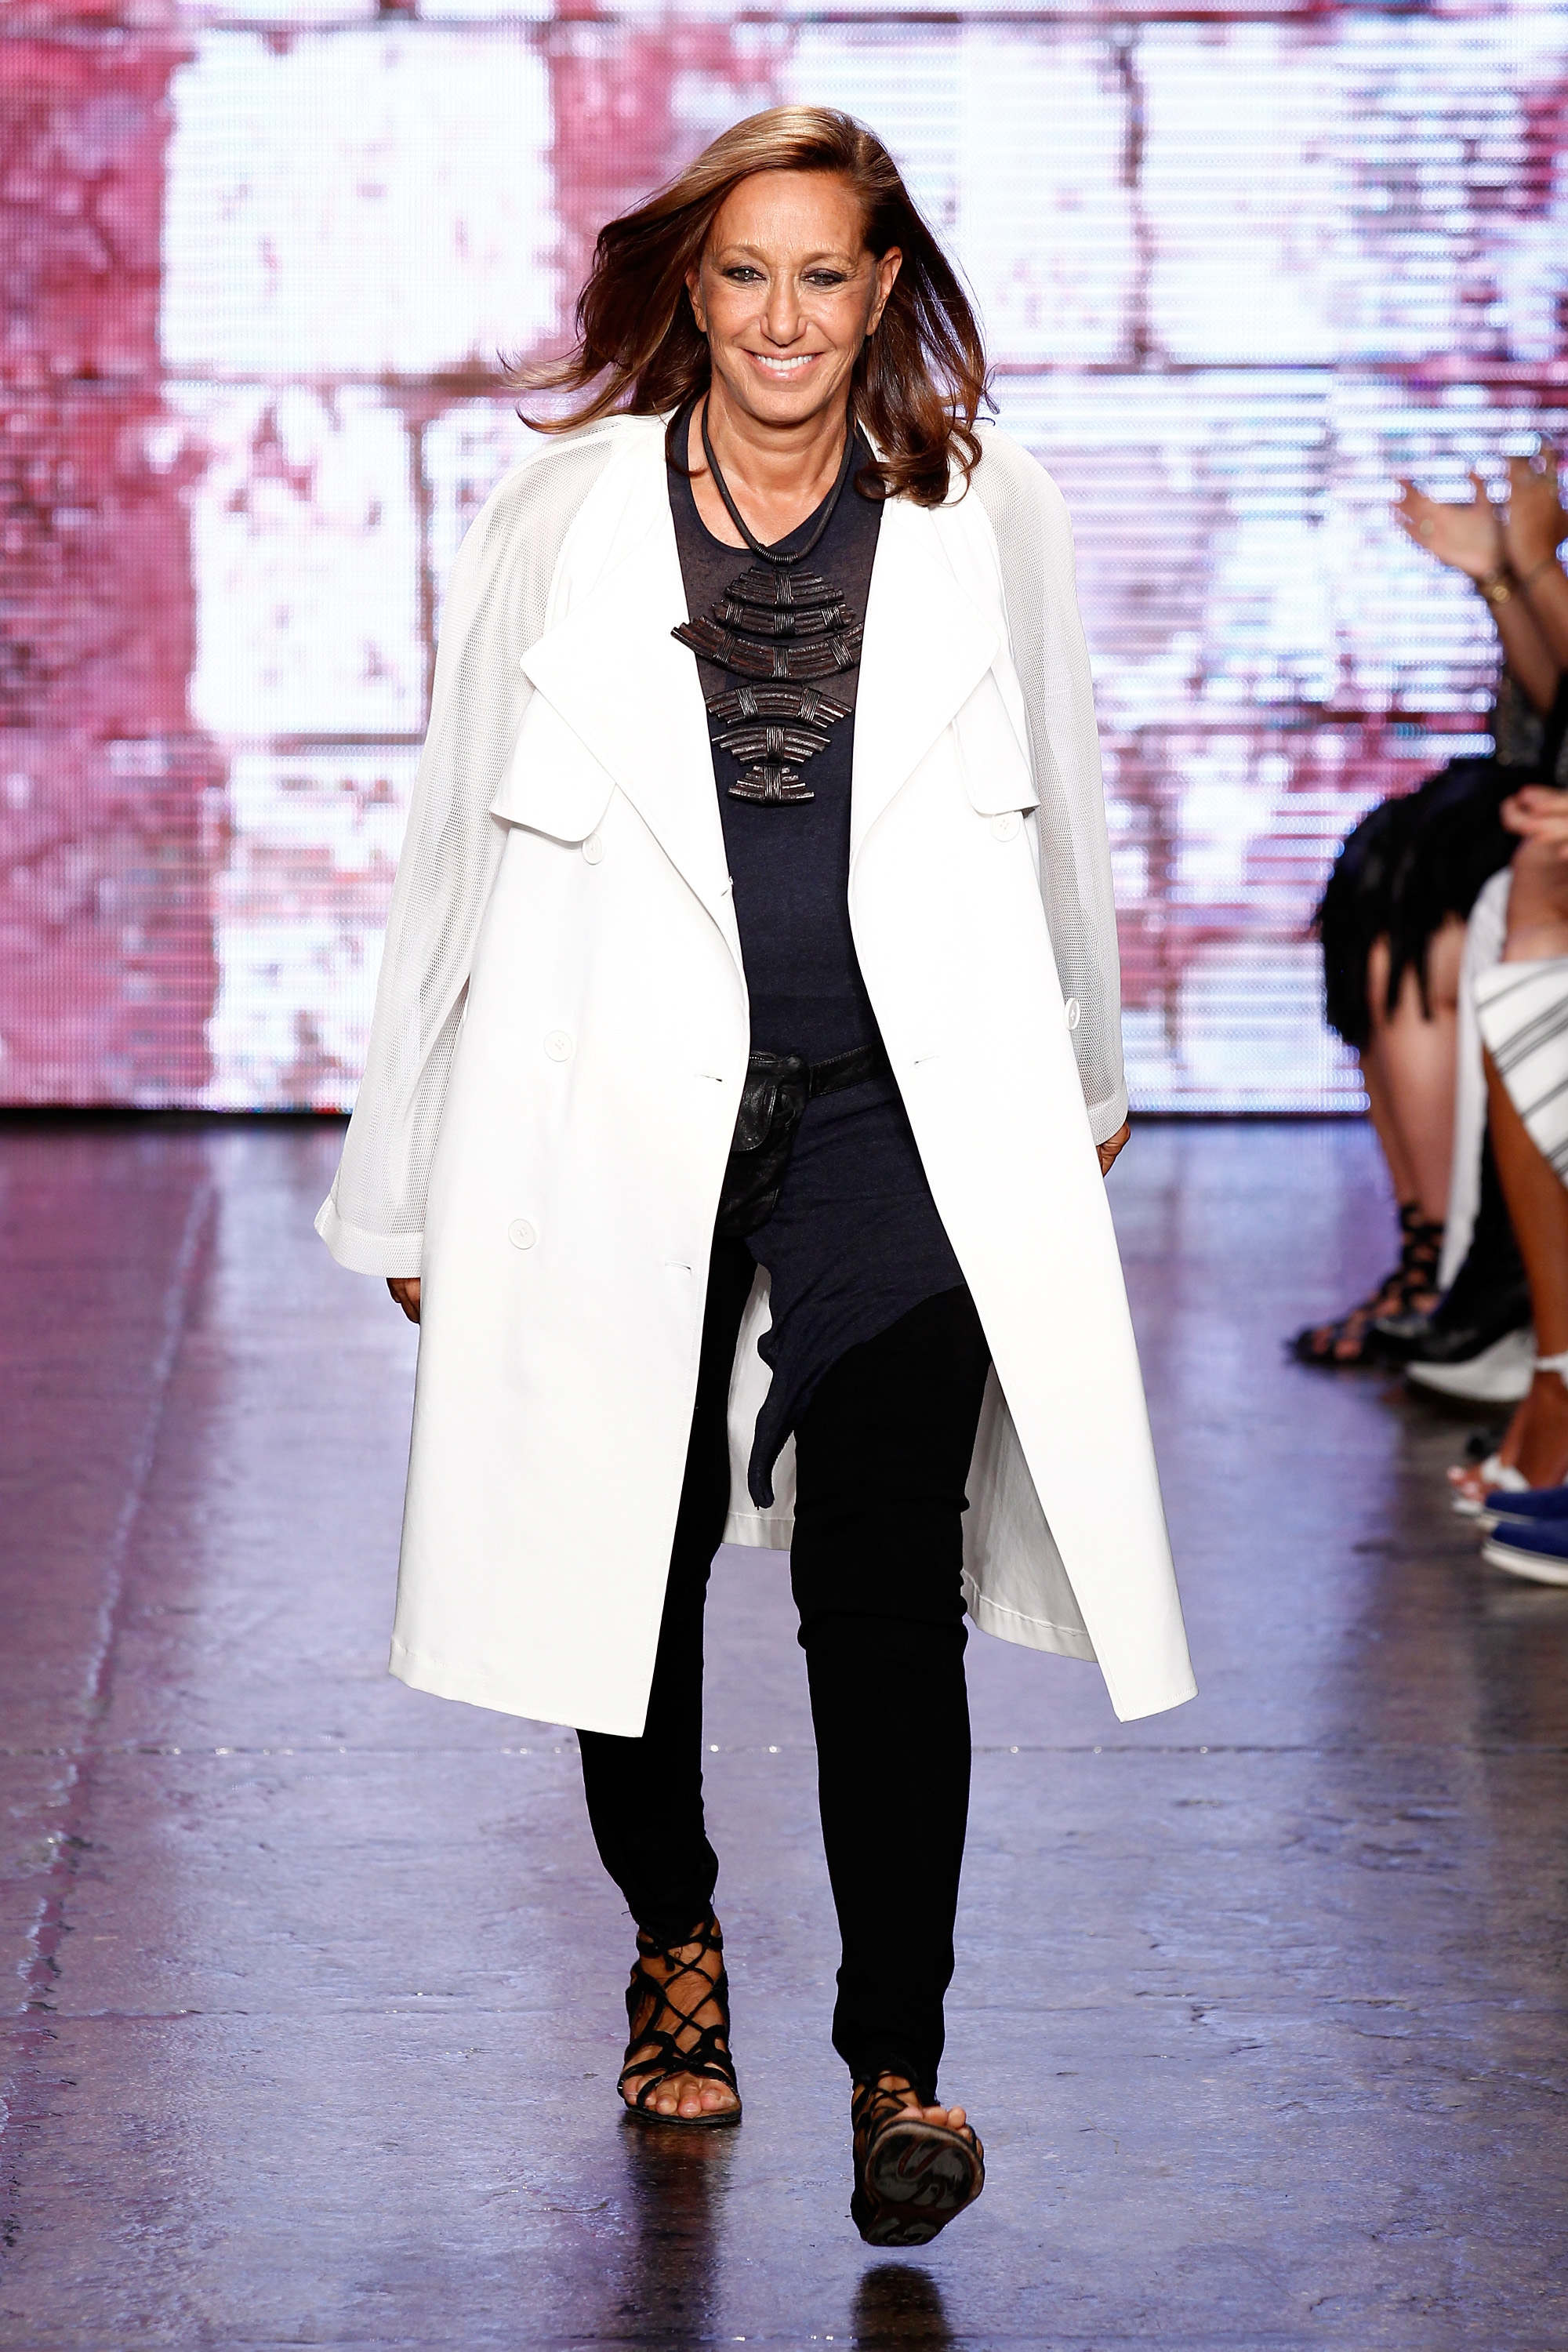 Donna Karan - Women in Fashion - TIME